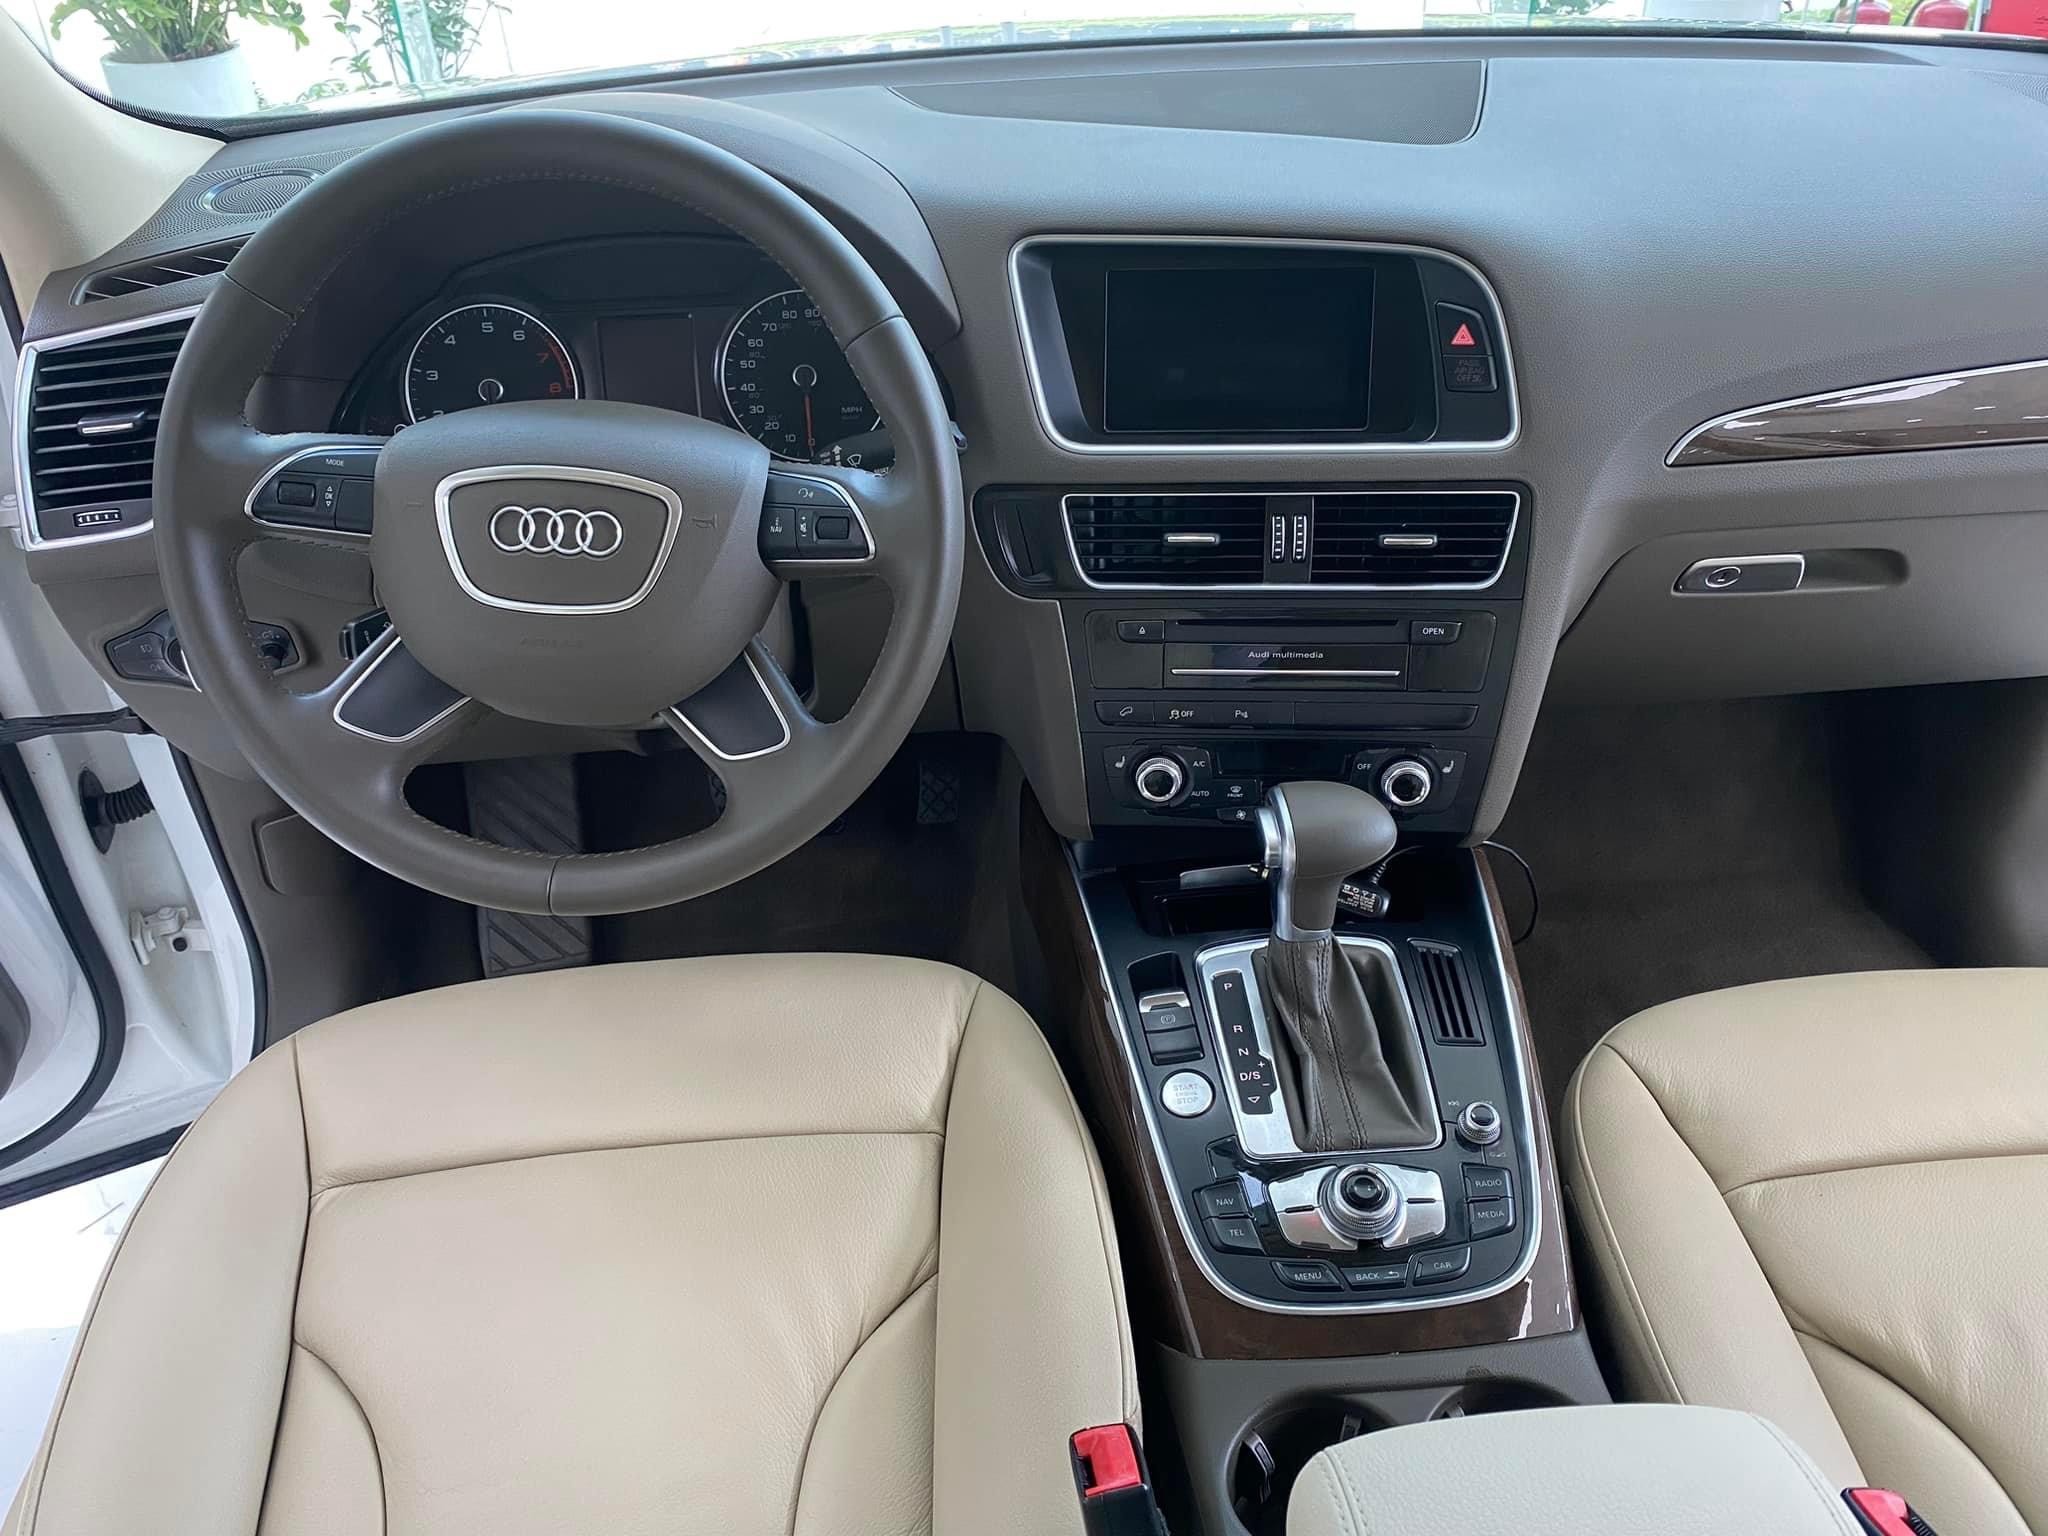 Bán Audi Q5 nhập Mỹ. bản full, sản xuất 2015, một chủ từ mới.